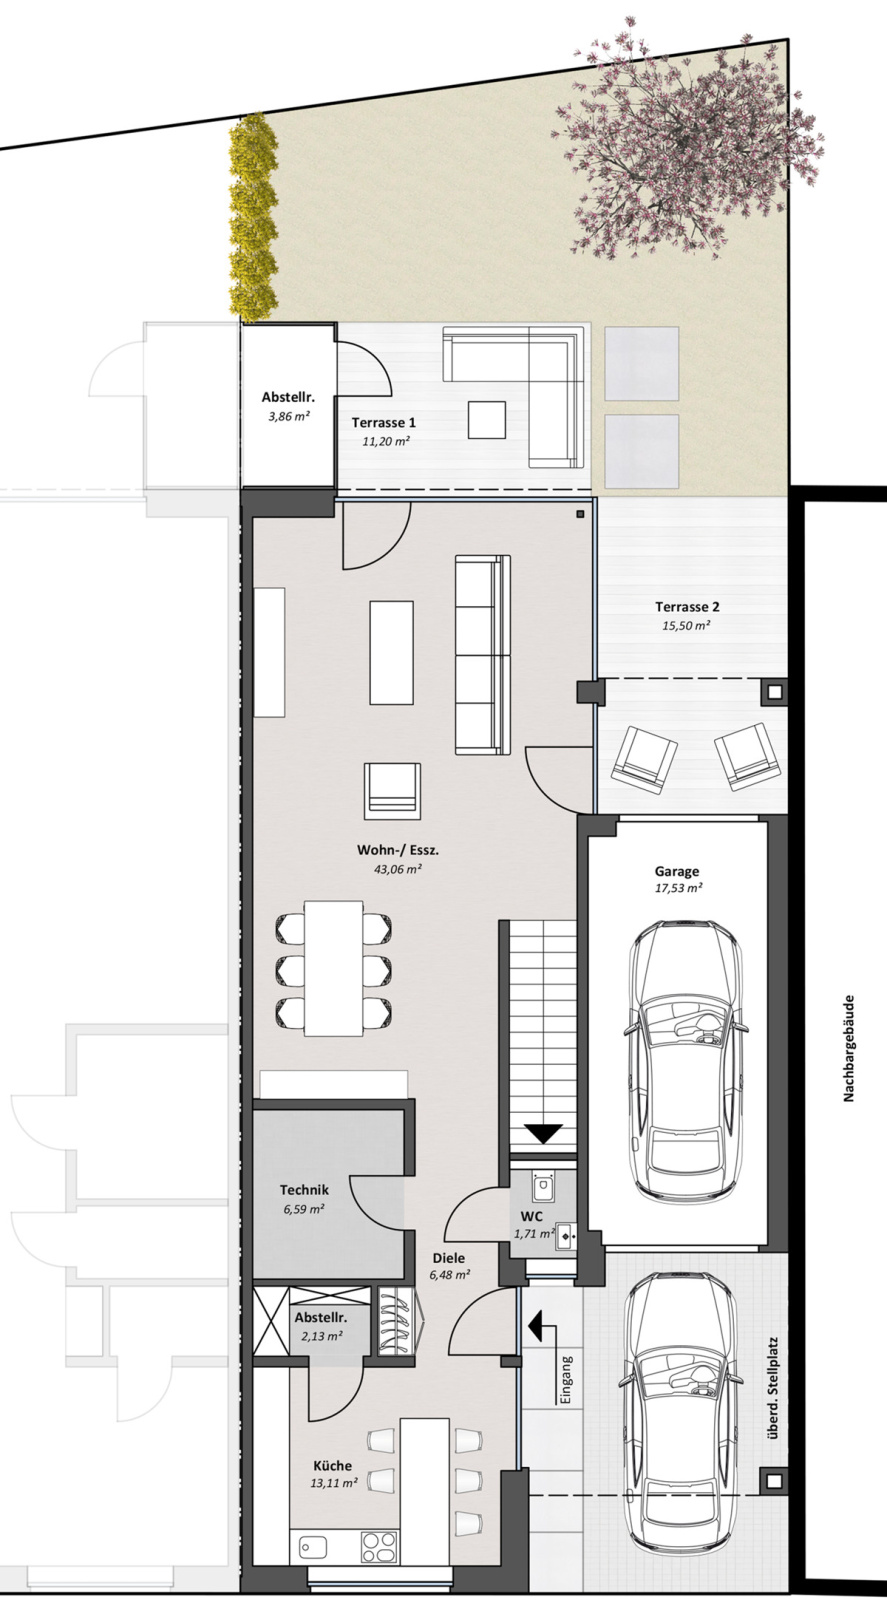 Grundriss einer Doppelhaushälfte zeigt Küche, Wohnzimmer, Flur, Garage und Terrasse